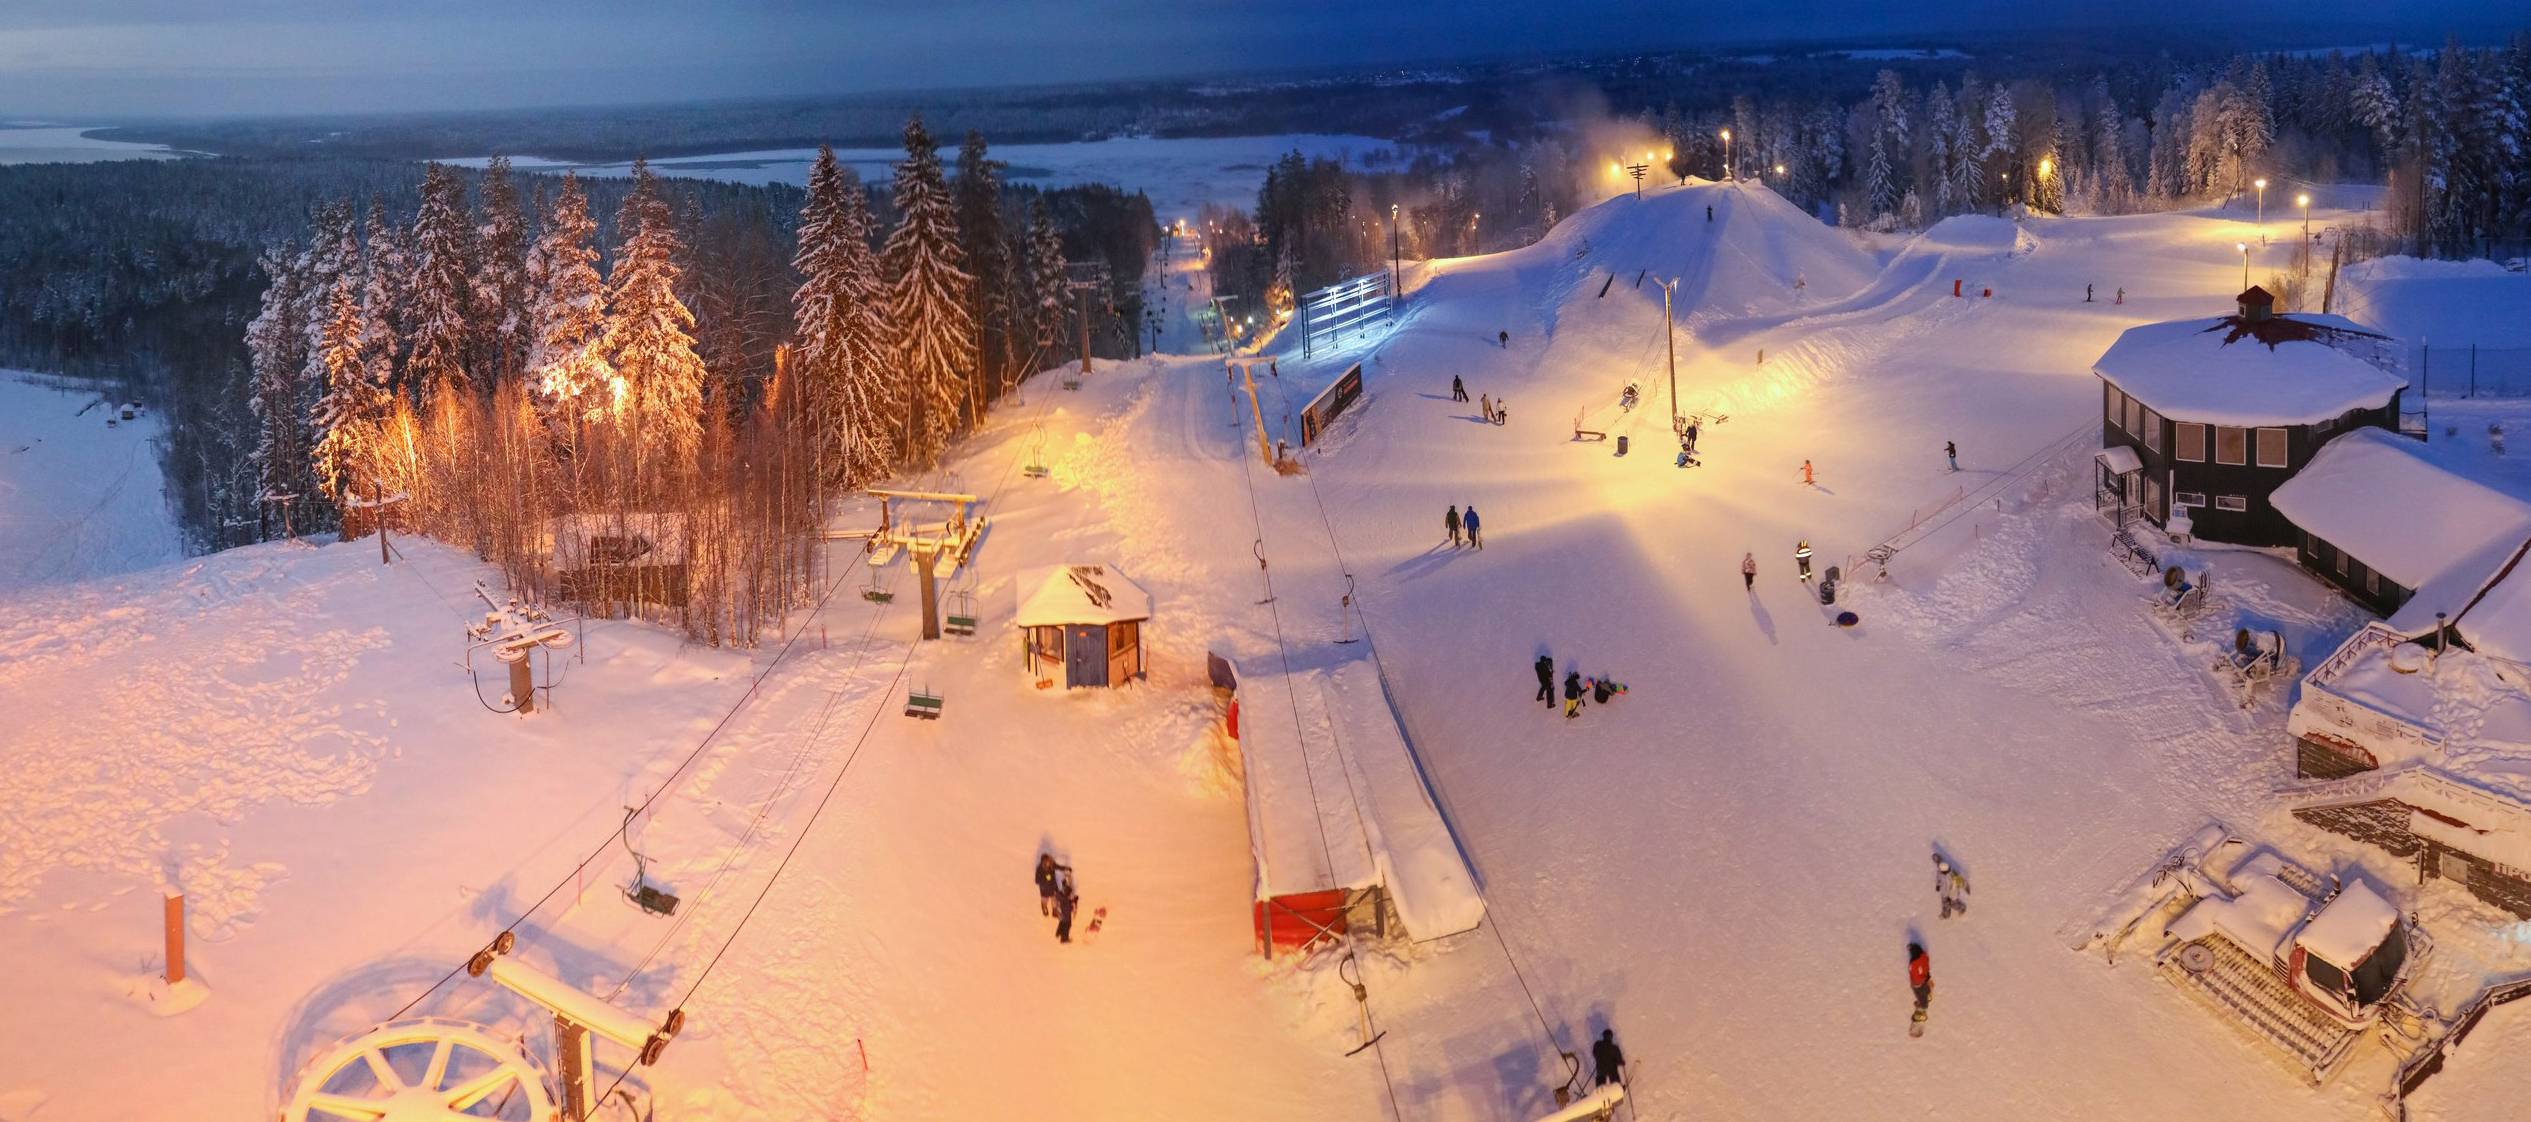 Снежный - горнолыжный курорт в ленинградской области